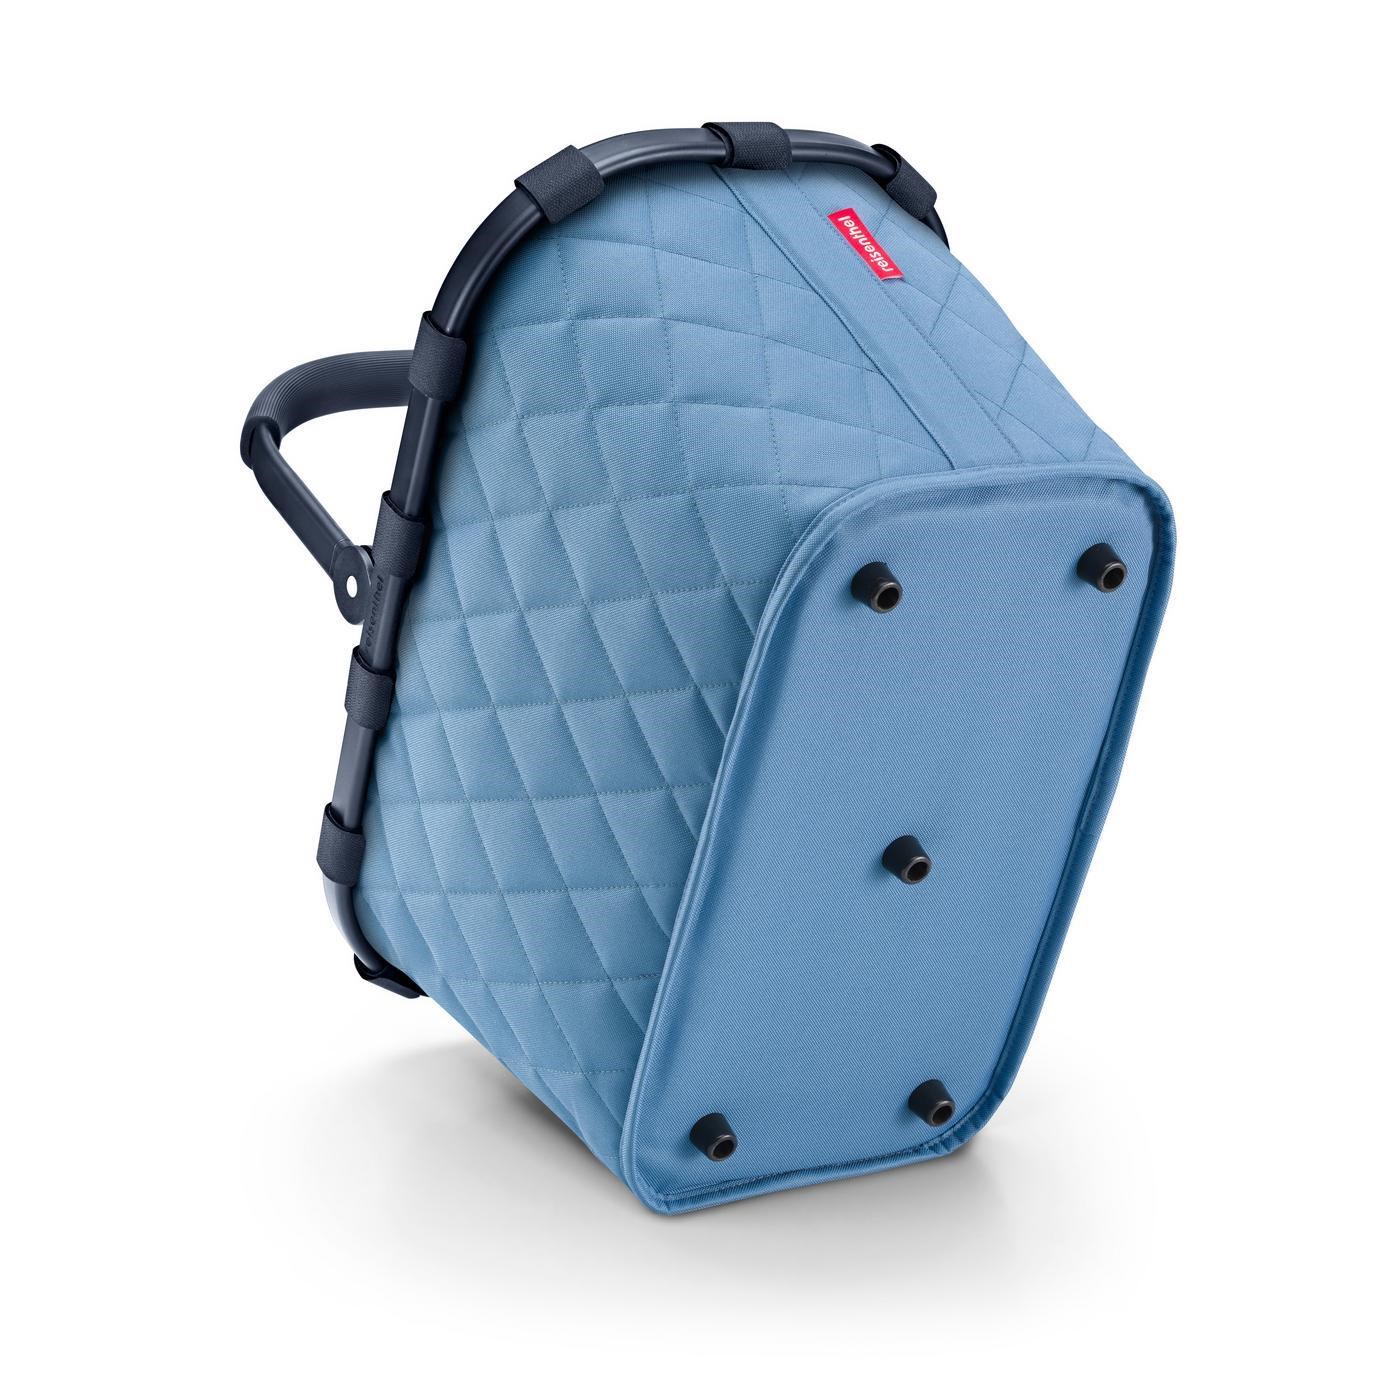 Nákupní košík Carrybag rhombus blue_2